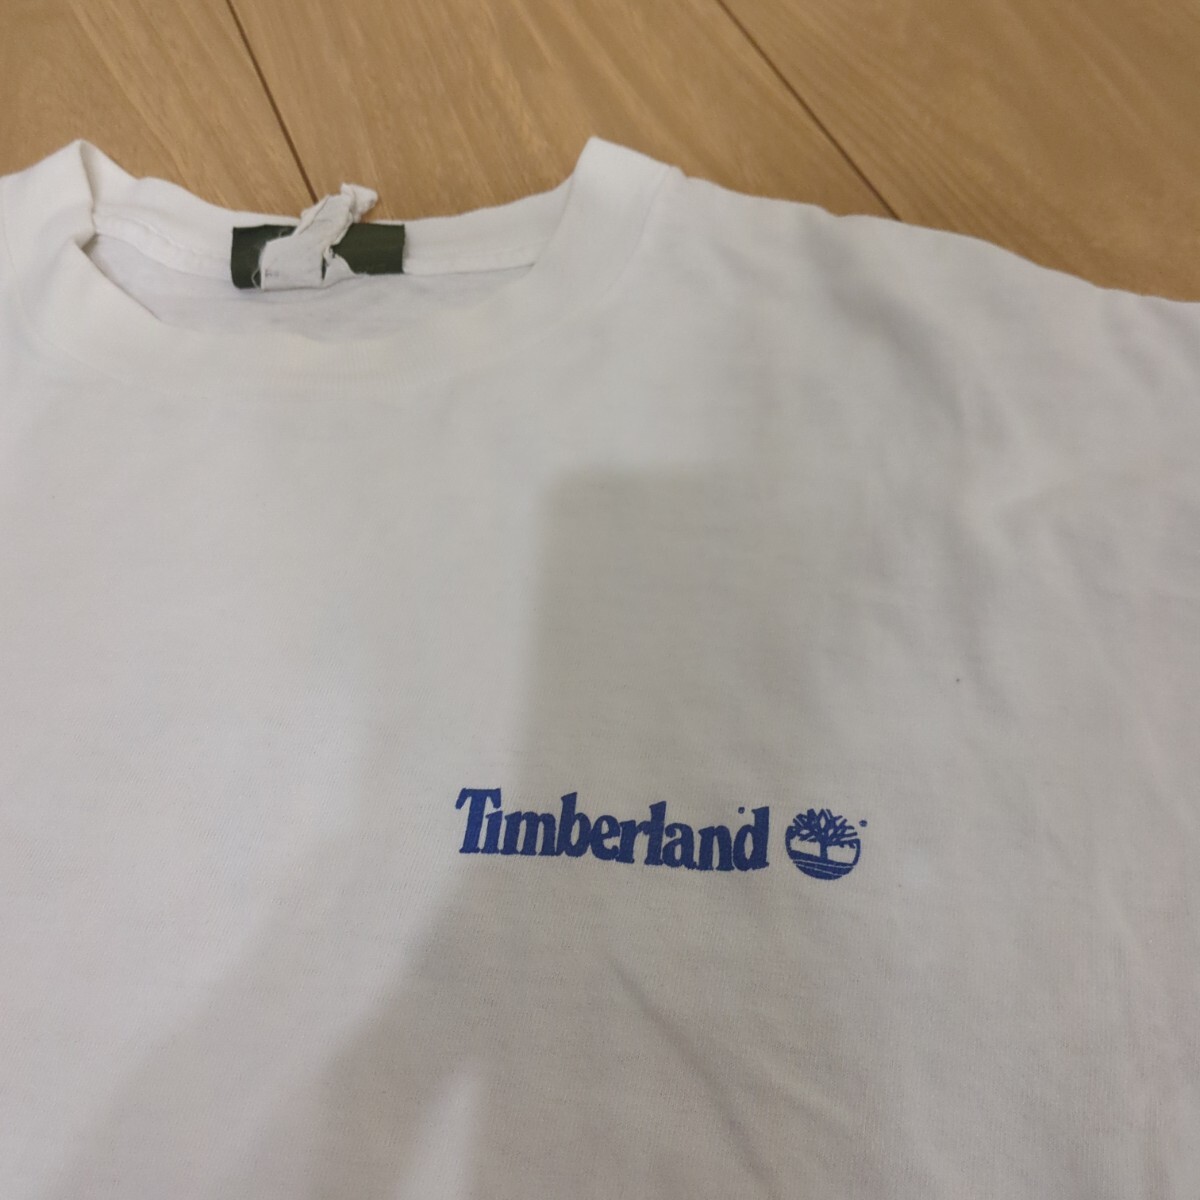  Timberland T-shirt 90s big size L size 